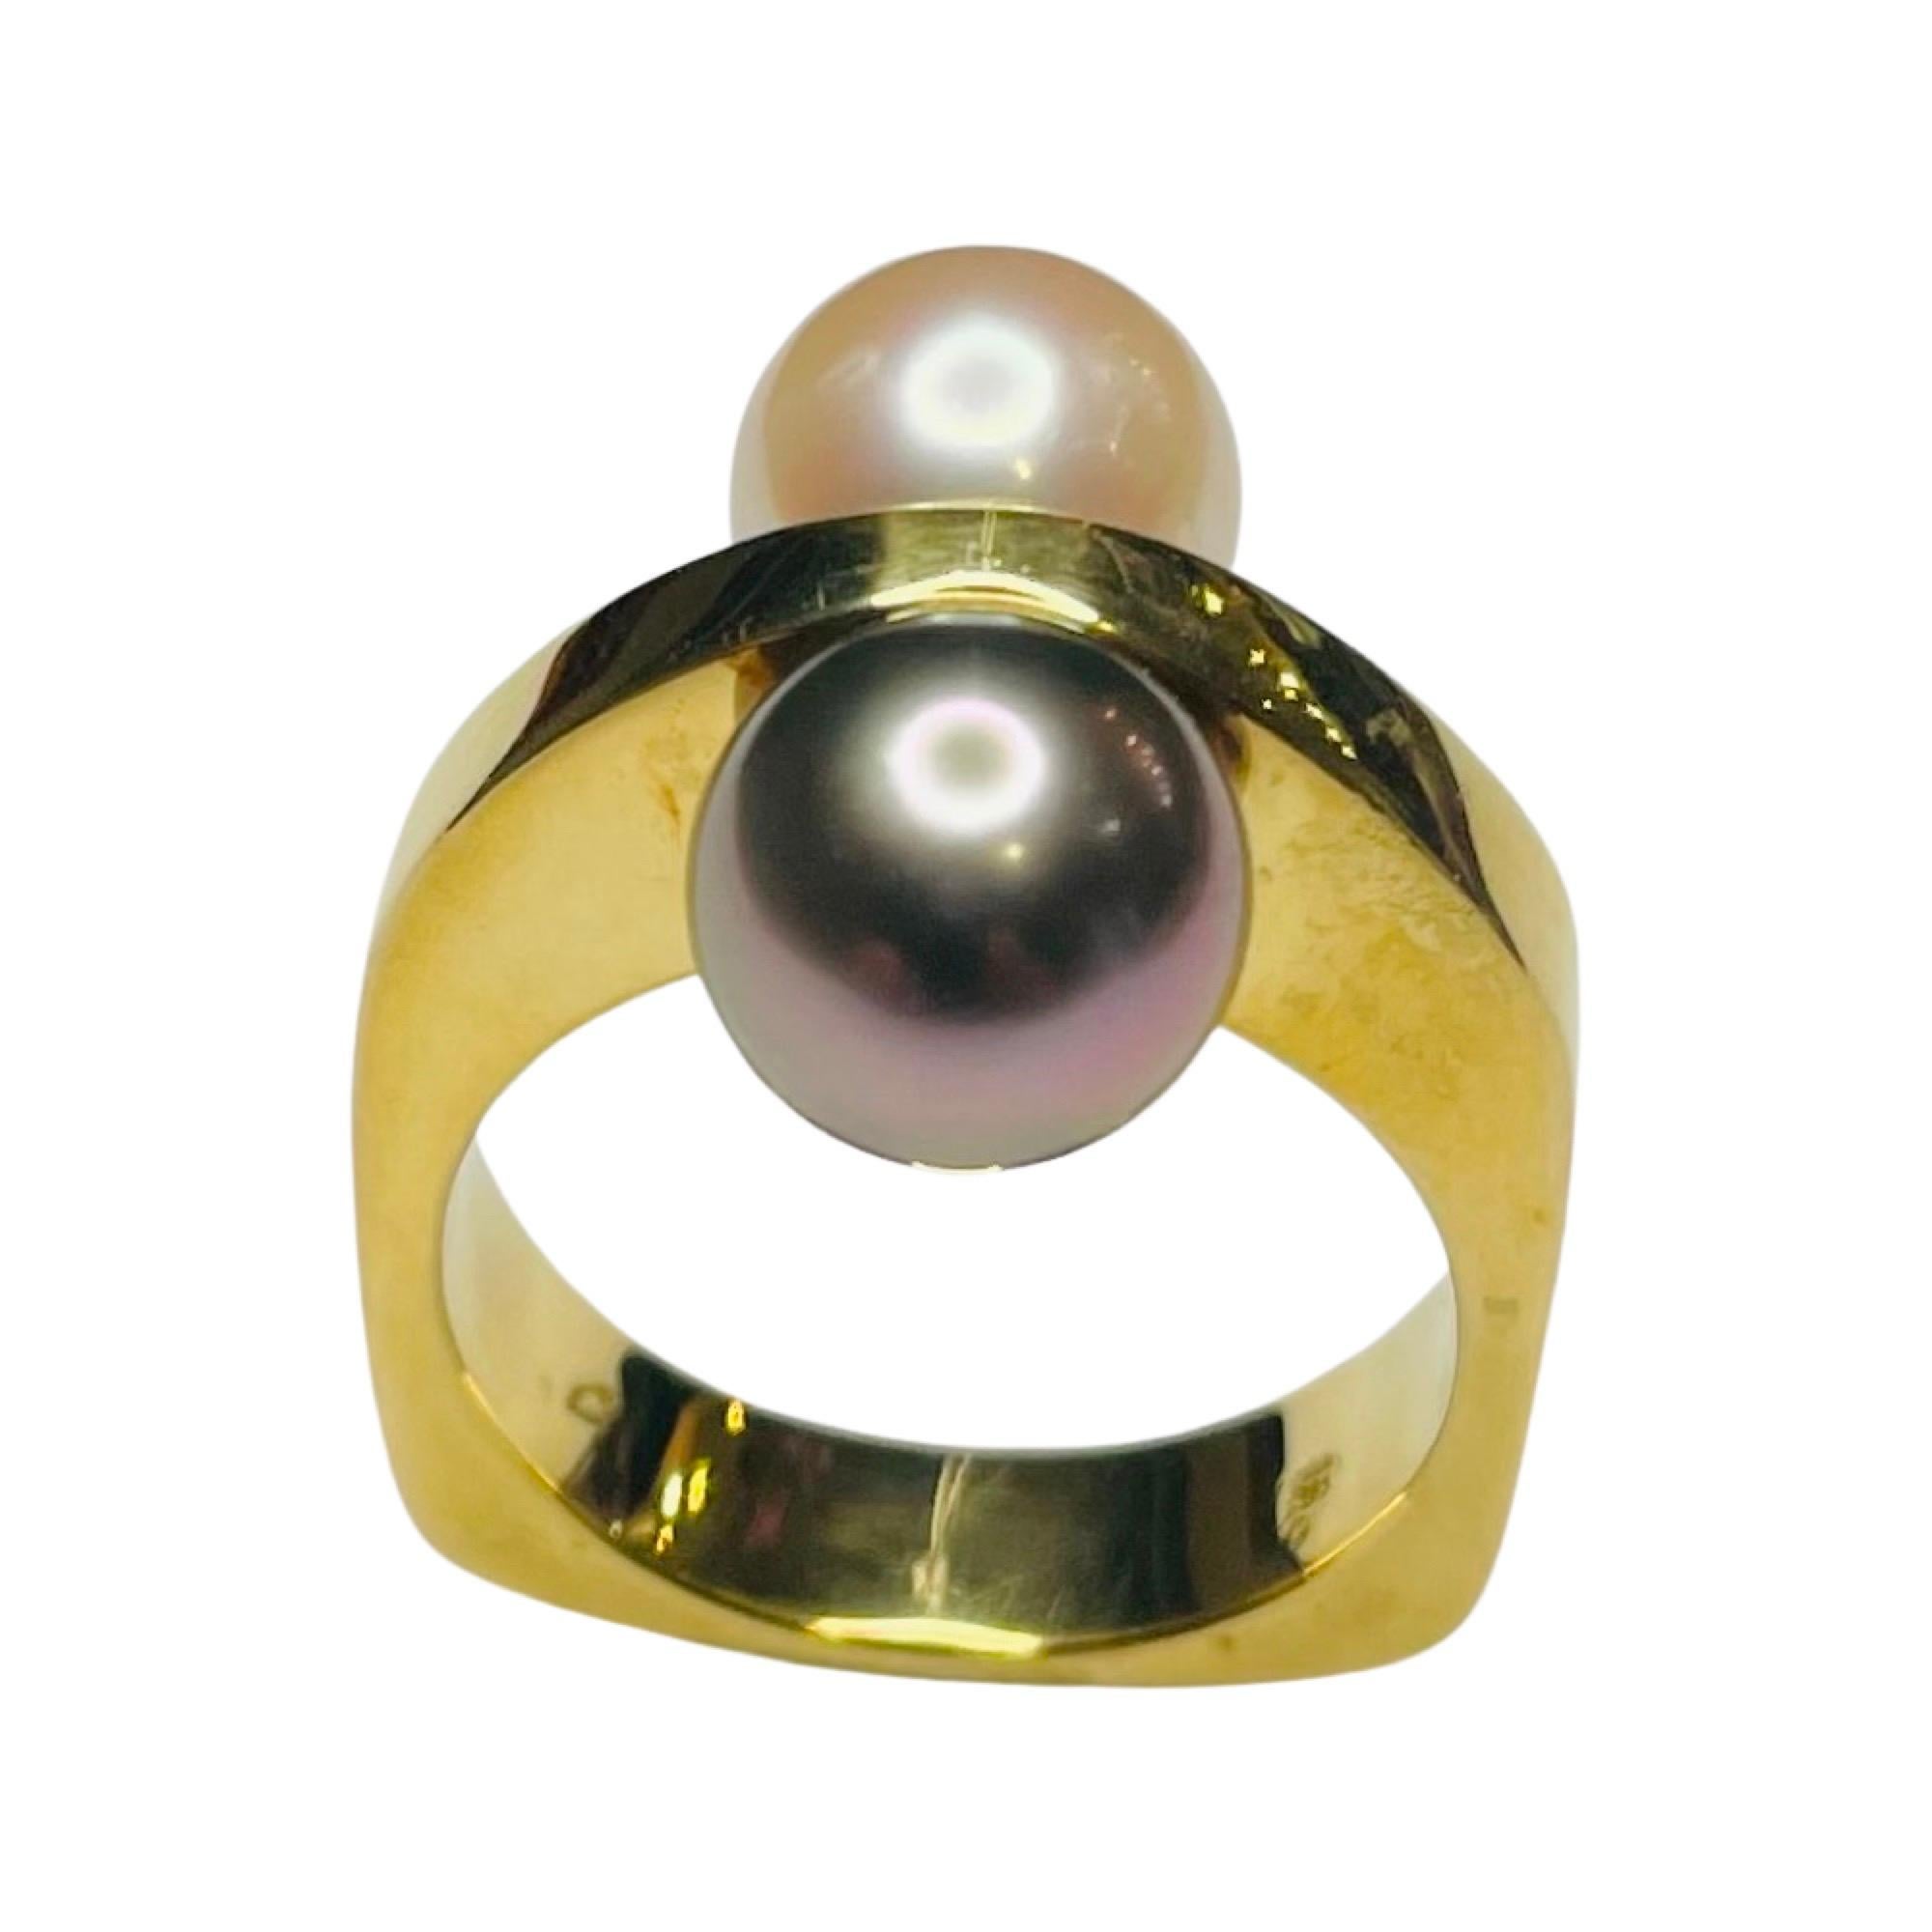 Lithos 18K Gelbgold kultiviert natürliche Farbe schwarz Tahiti-Perle und weiß Japanisch  Akoya-Perlen-Ring. Die schwarze Tahiti-Perle ist 8,89 mm groß. Diese Perle ist rund mit leichten Fehlern und einem rosa/poe rava Oberton. Die Akoya-Perle ist